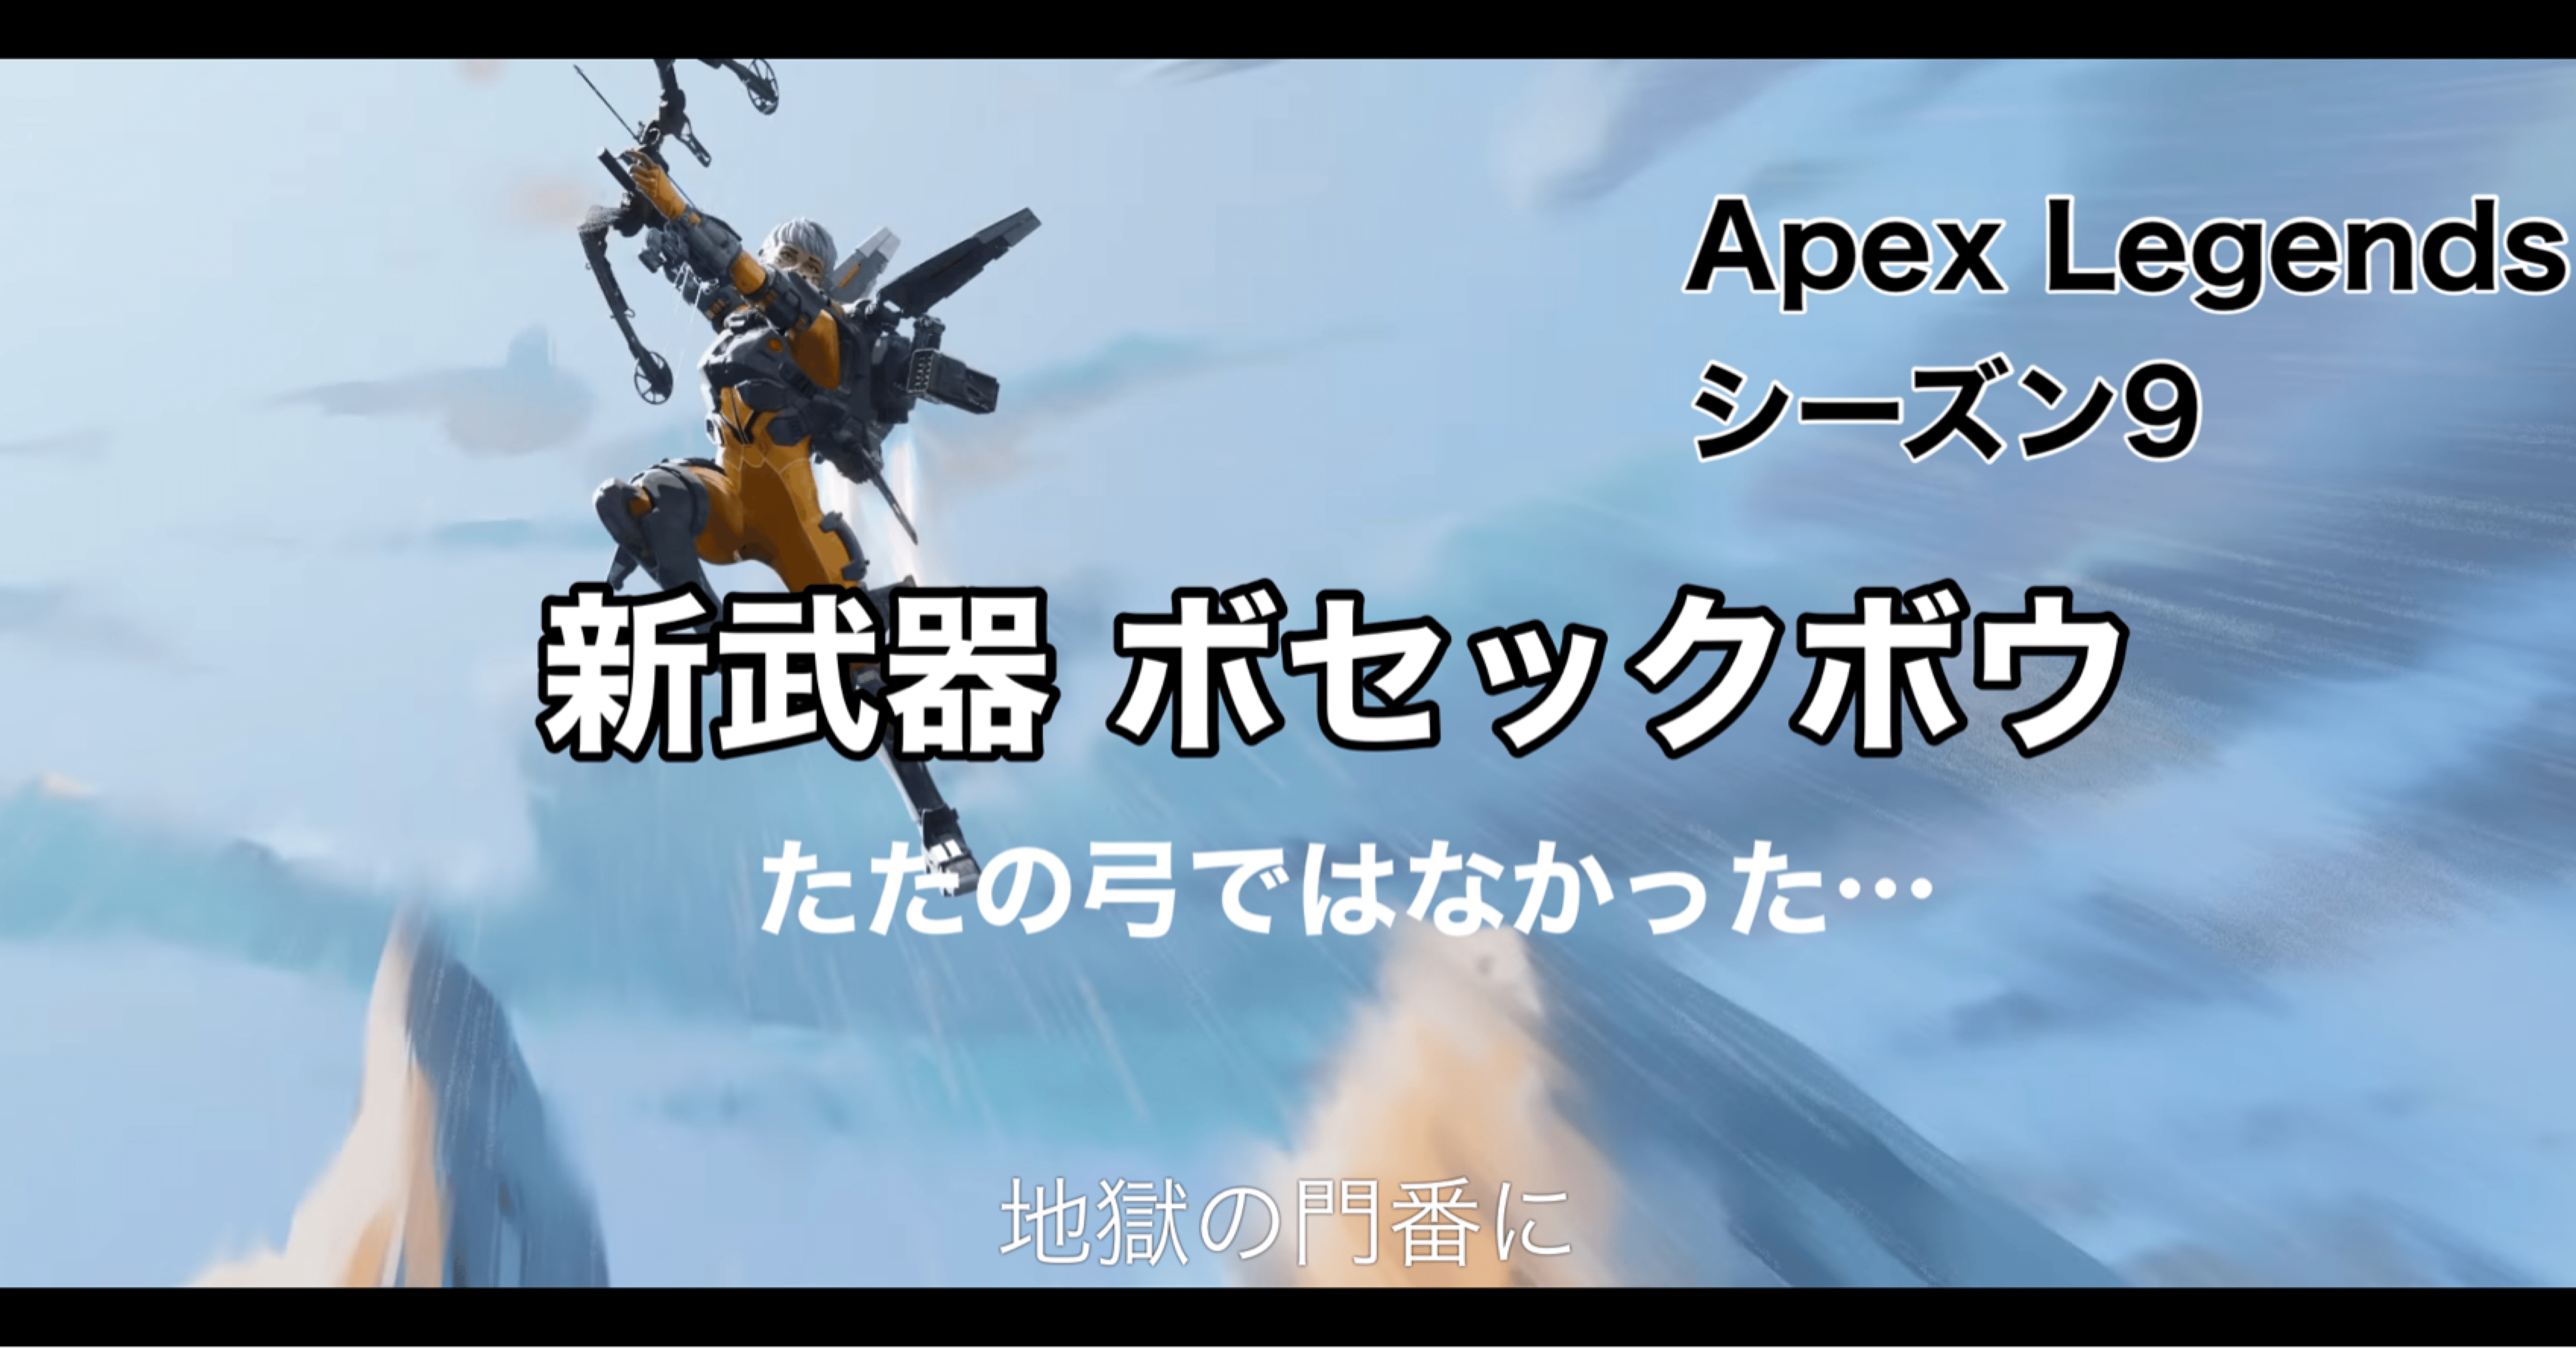 Apex Legends シーズン9 新武器 ボセックボウ ただの弓 ではなかった マークスマン武器登場 Hys ひす 毎日ゲームnote Note